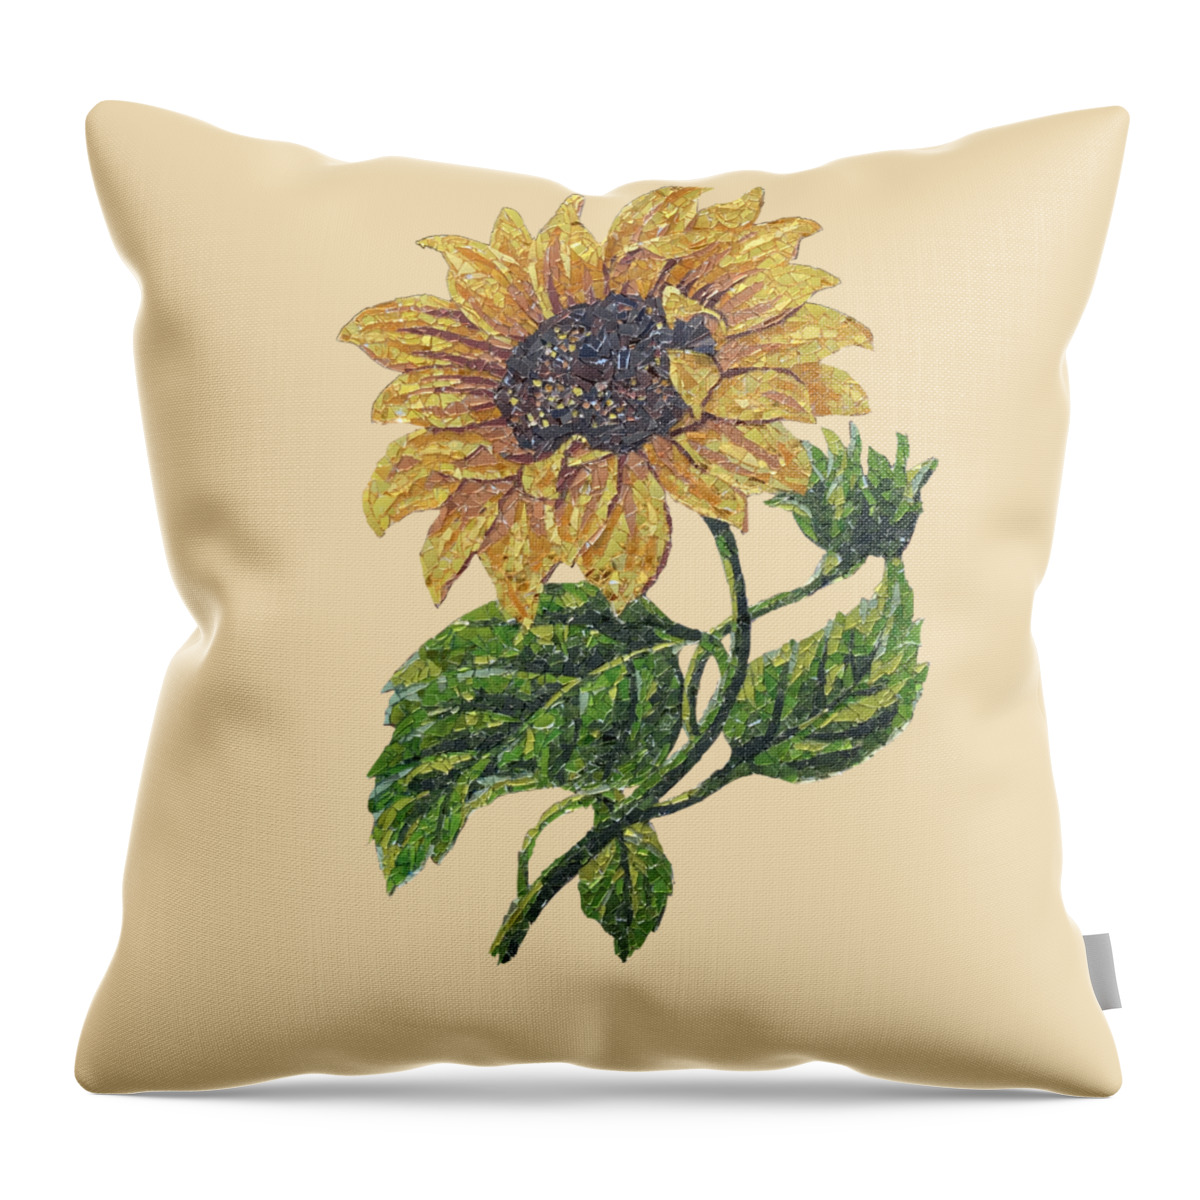 Sunflower Throw Pillow featuring the mixed media Sunflower by Matthew Lazure